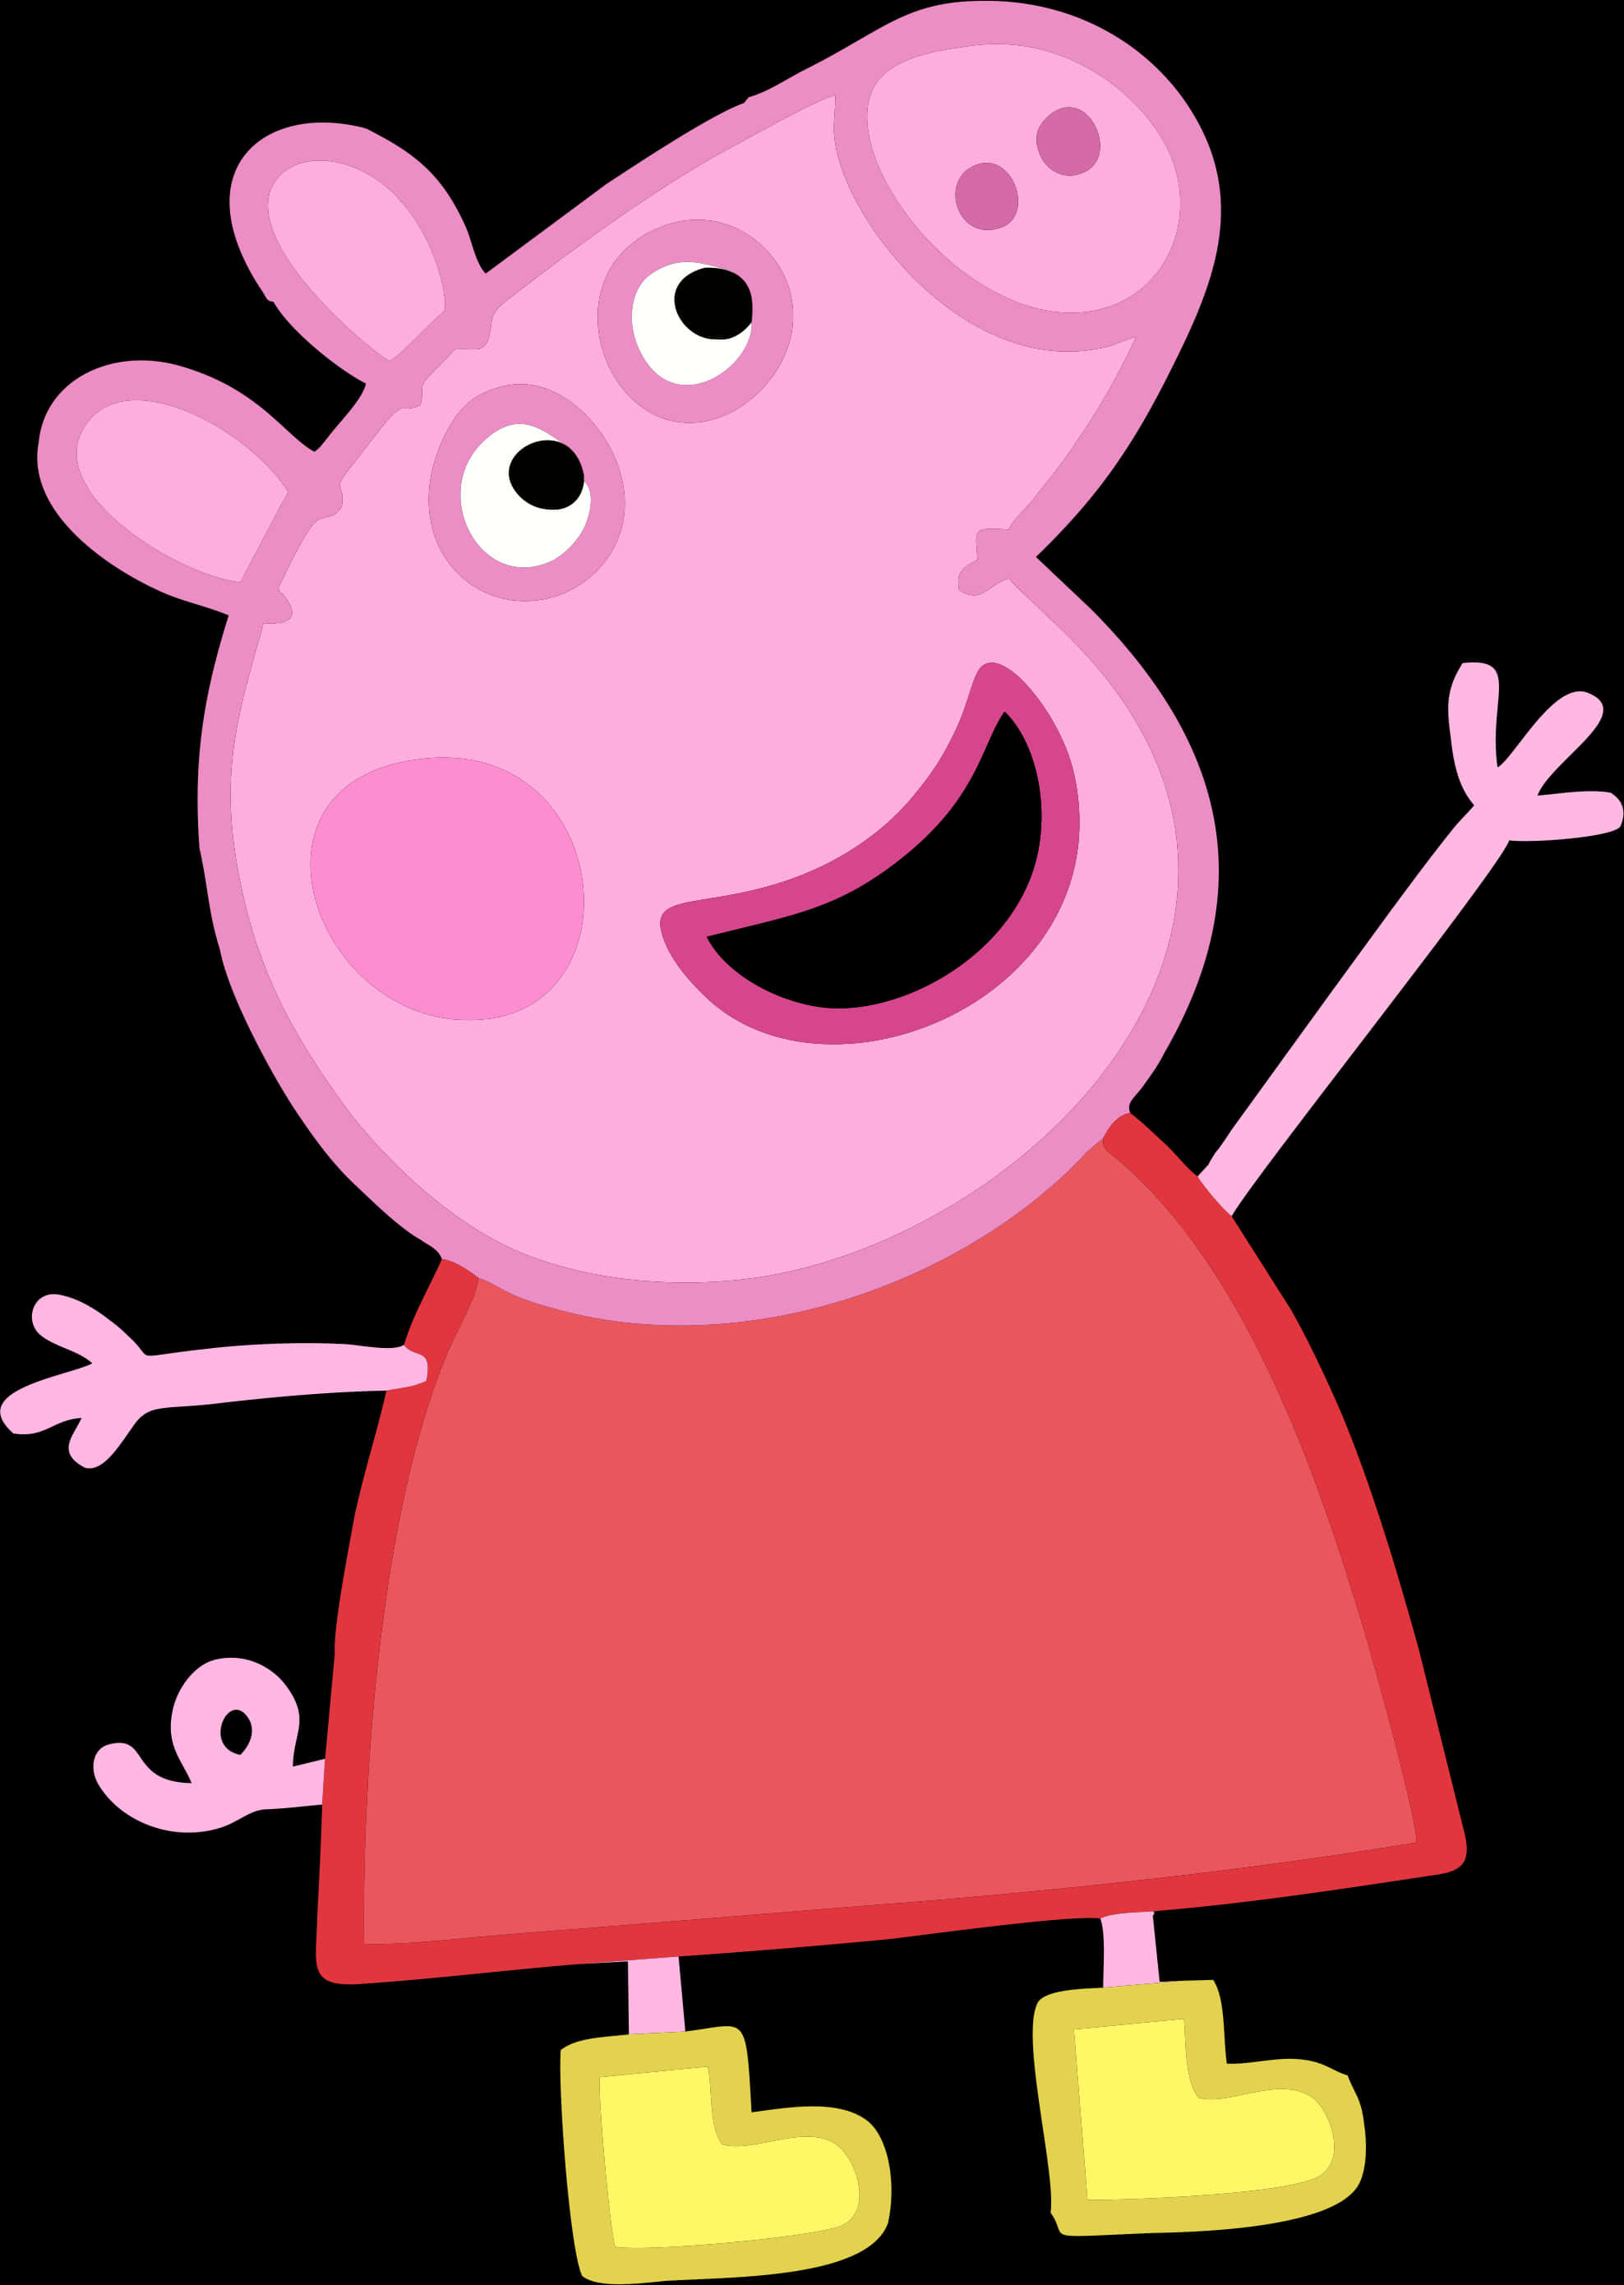 A Cartoon Of A Pig